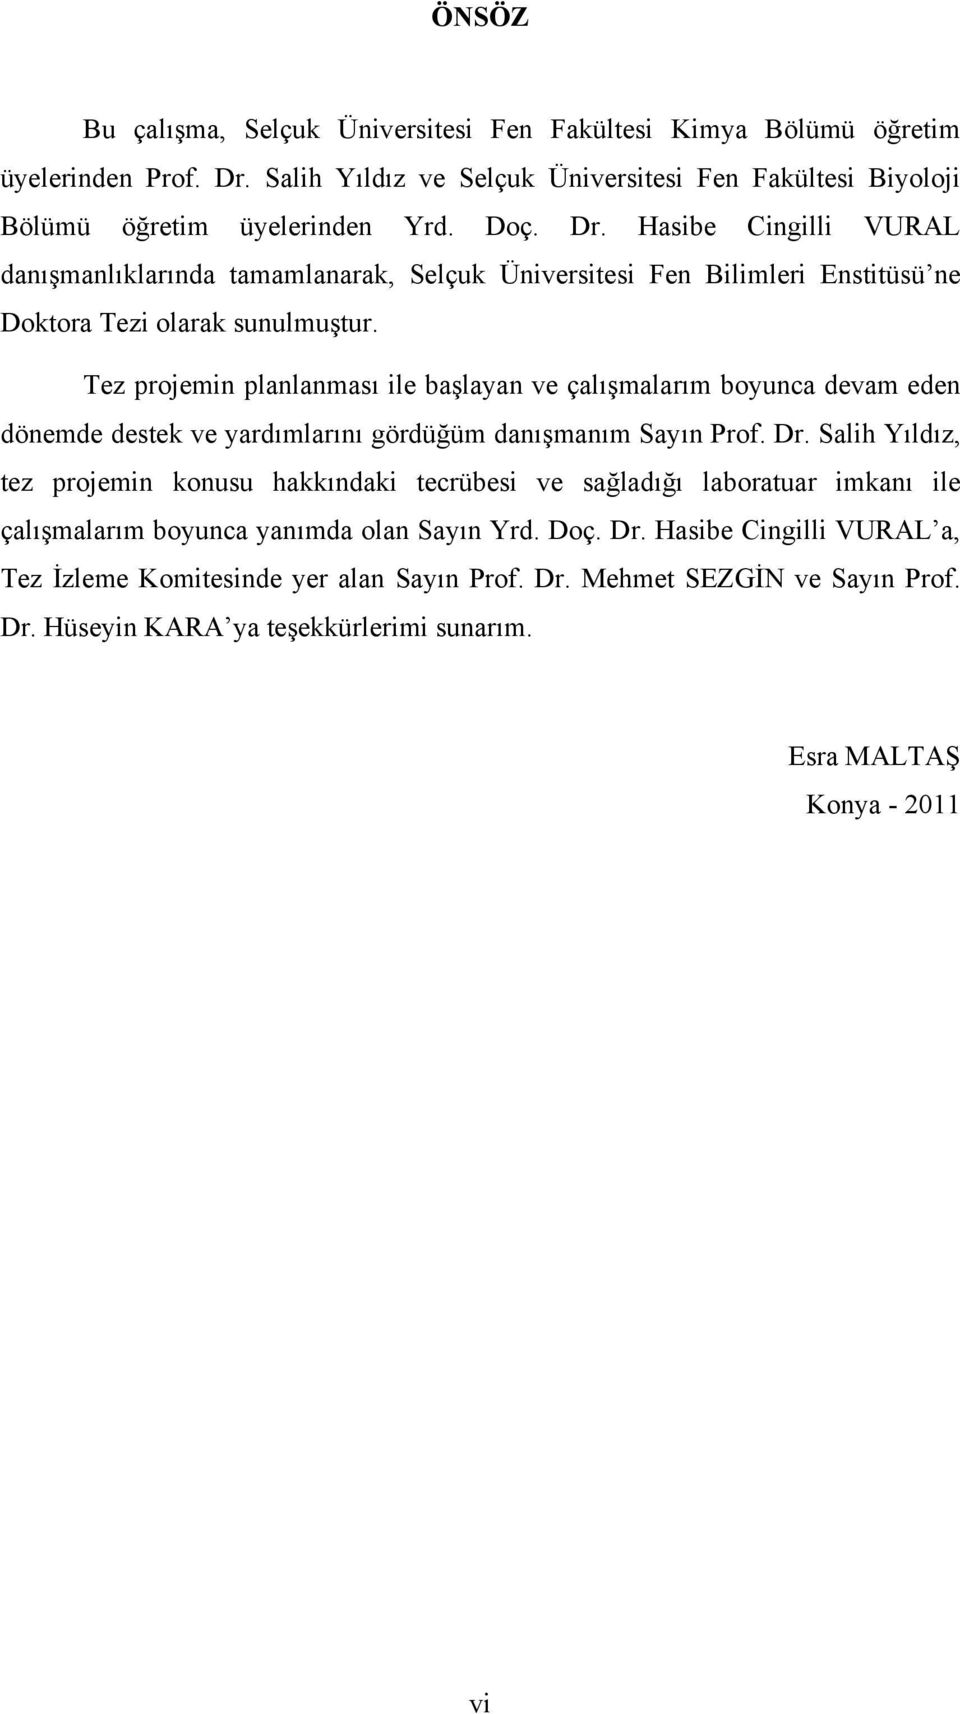 Hasibe Cingilli VURAL danışmanlıklarında tamamlanarak, Selçuk Üniversitesi Fen Bilimleri Enstitüsü ne Doktora Tezi olarak sunulmuştur.